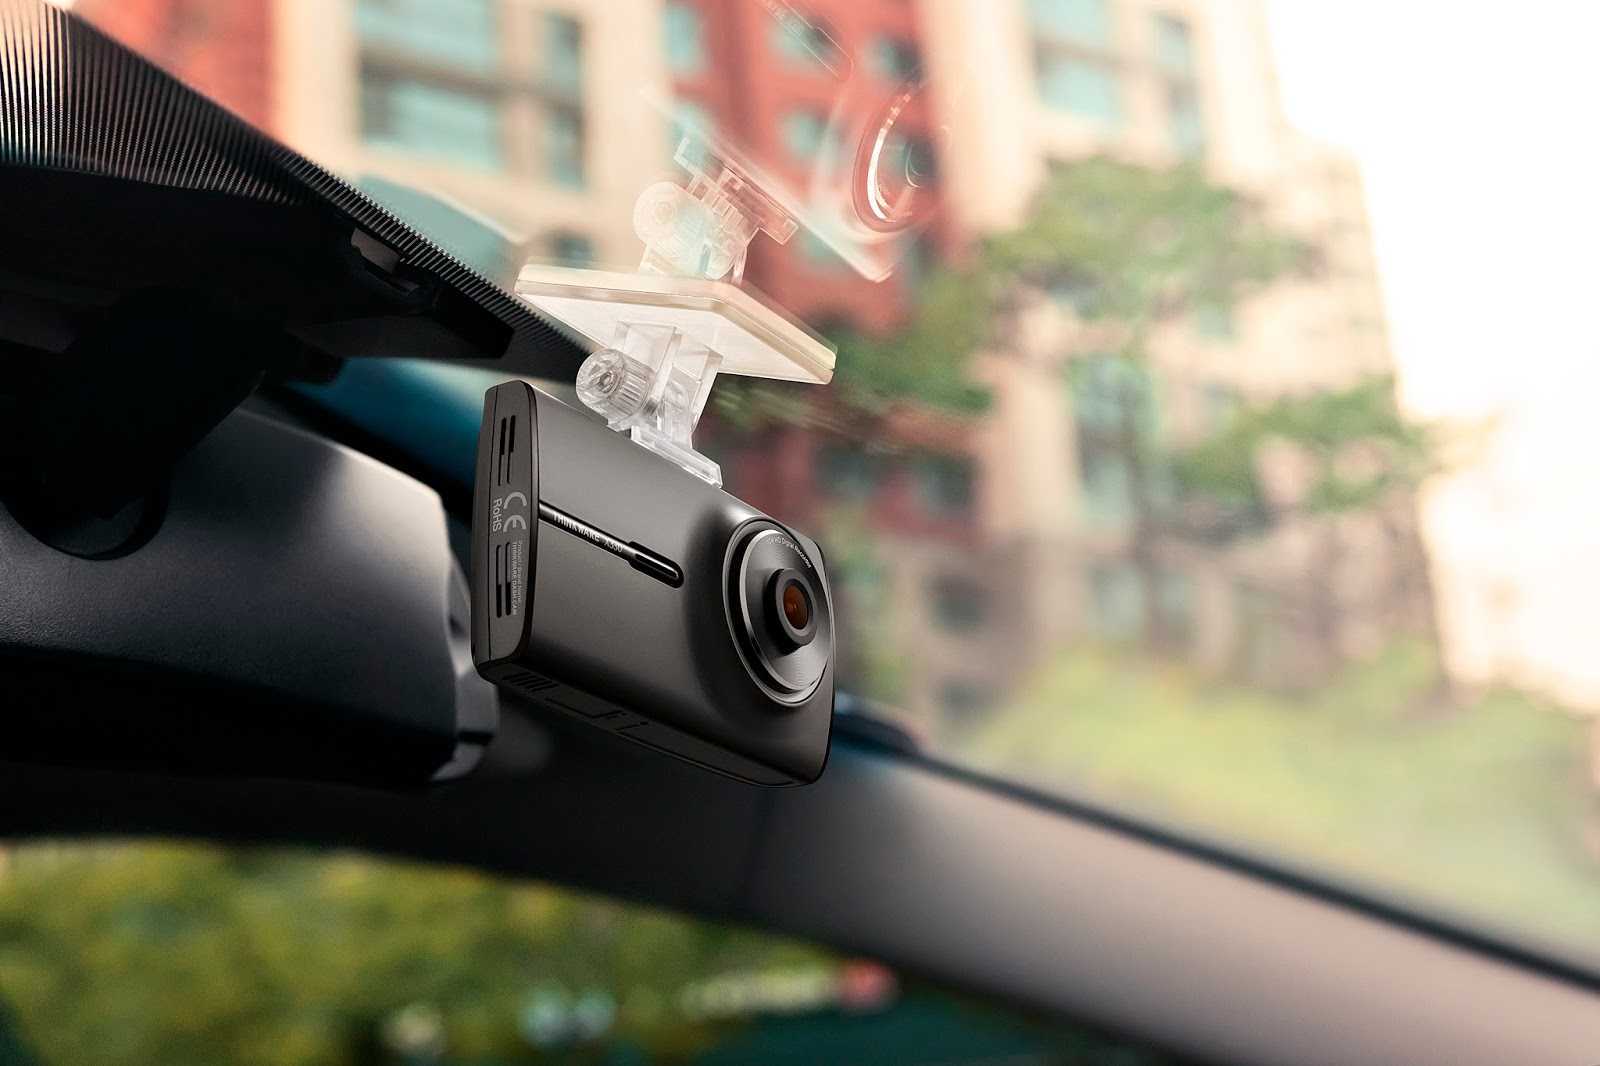 Топ 10 хороших недорогих видеорегистраторов автомобильных 2020 года